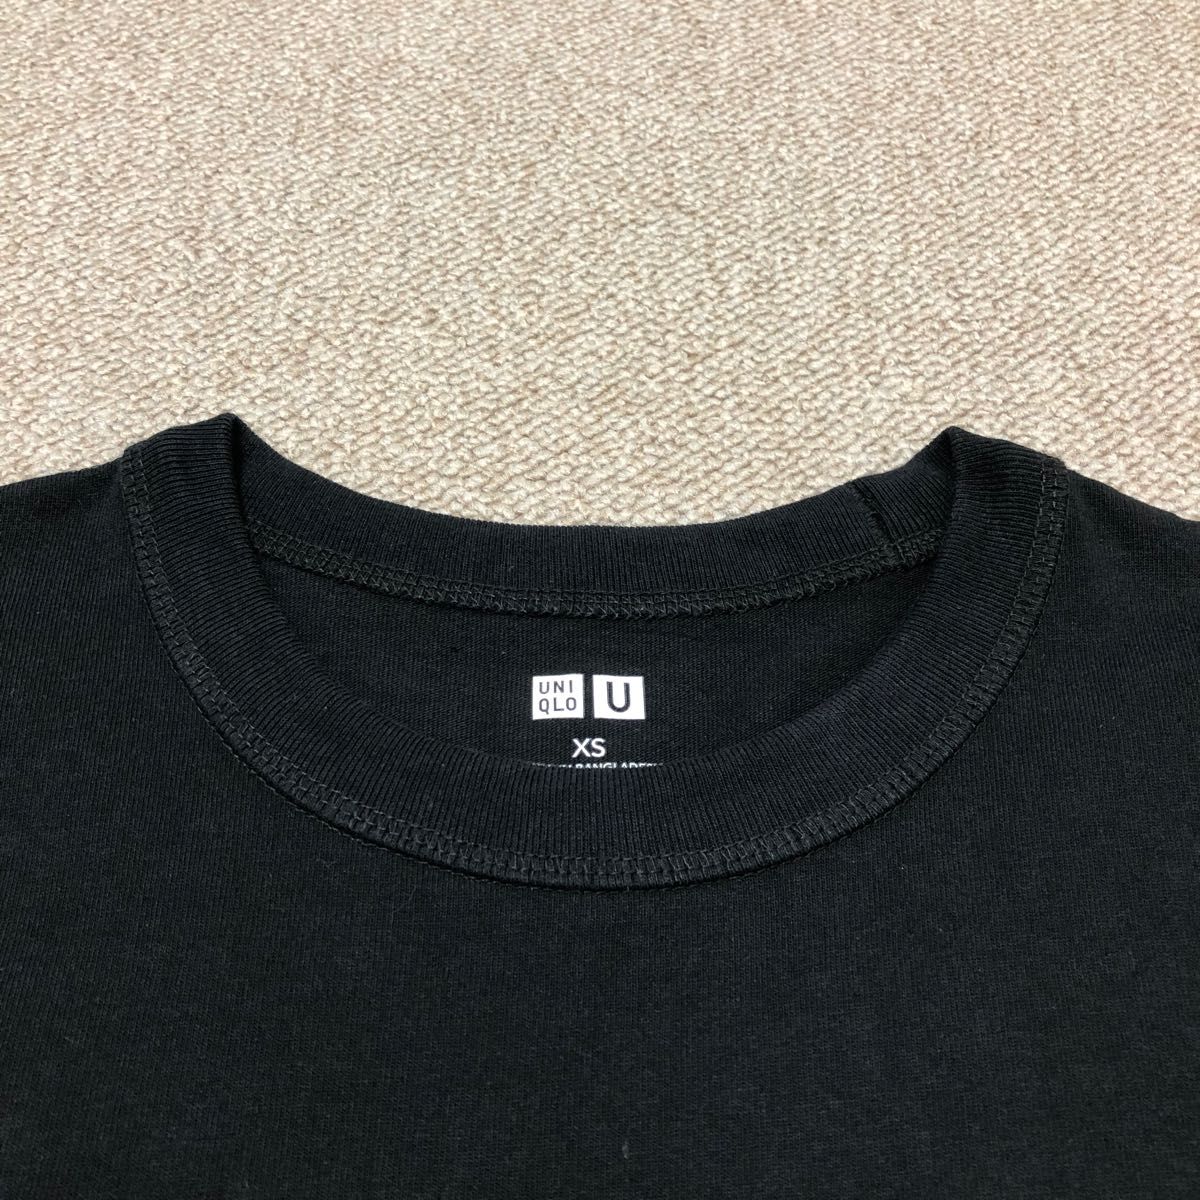 ユニクロU クルーネックTシャツ XS(メンズ商品) ブラック